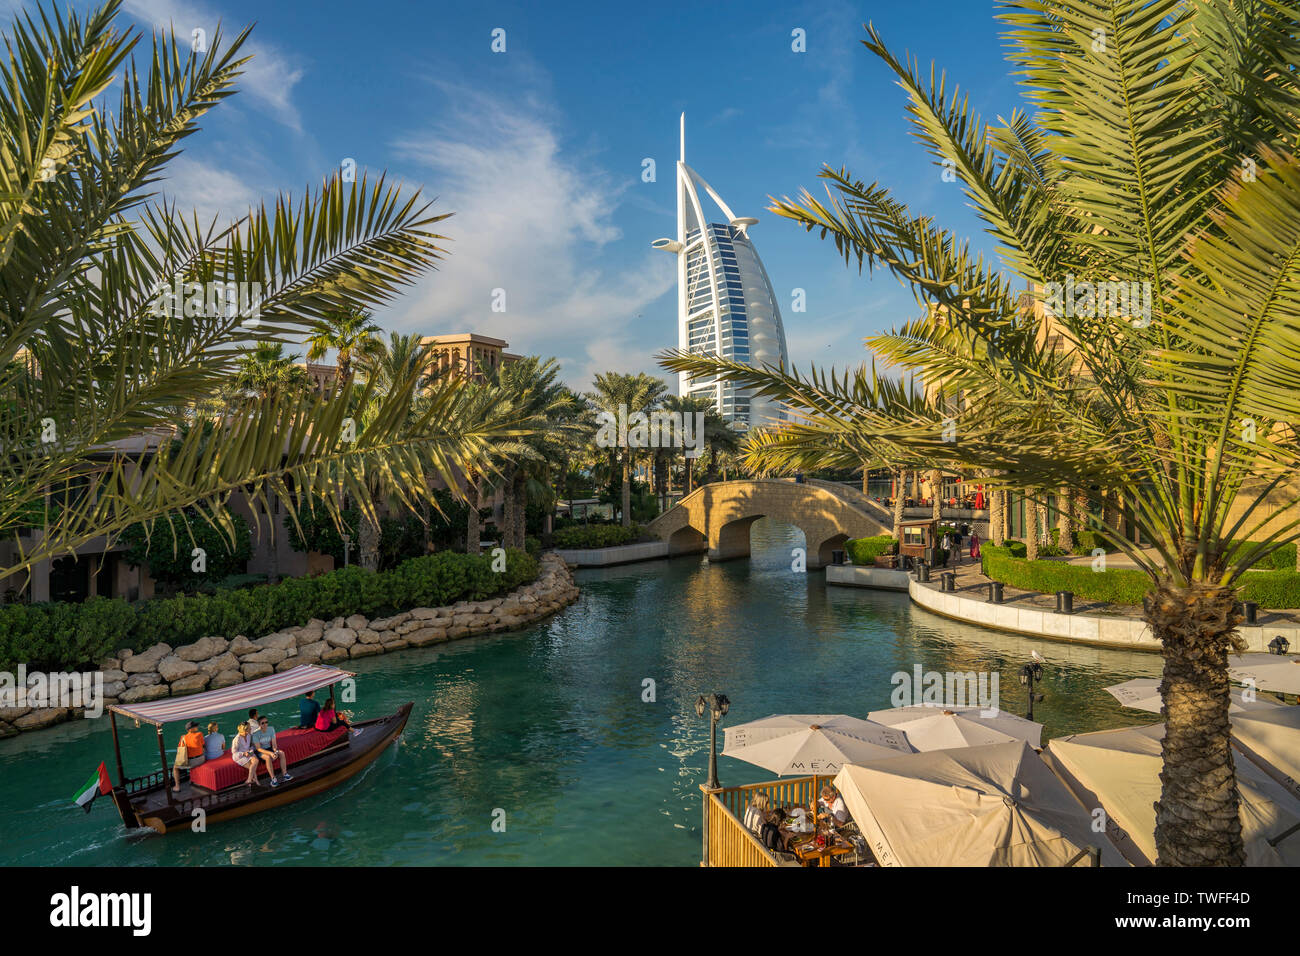 Un abra voile glisse à travers les eaux bleues de Souk Madinat Jumeirah comme la voile-comme le Burj al Arab s'élève au-dessus. Banque D'Images